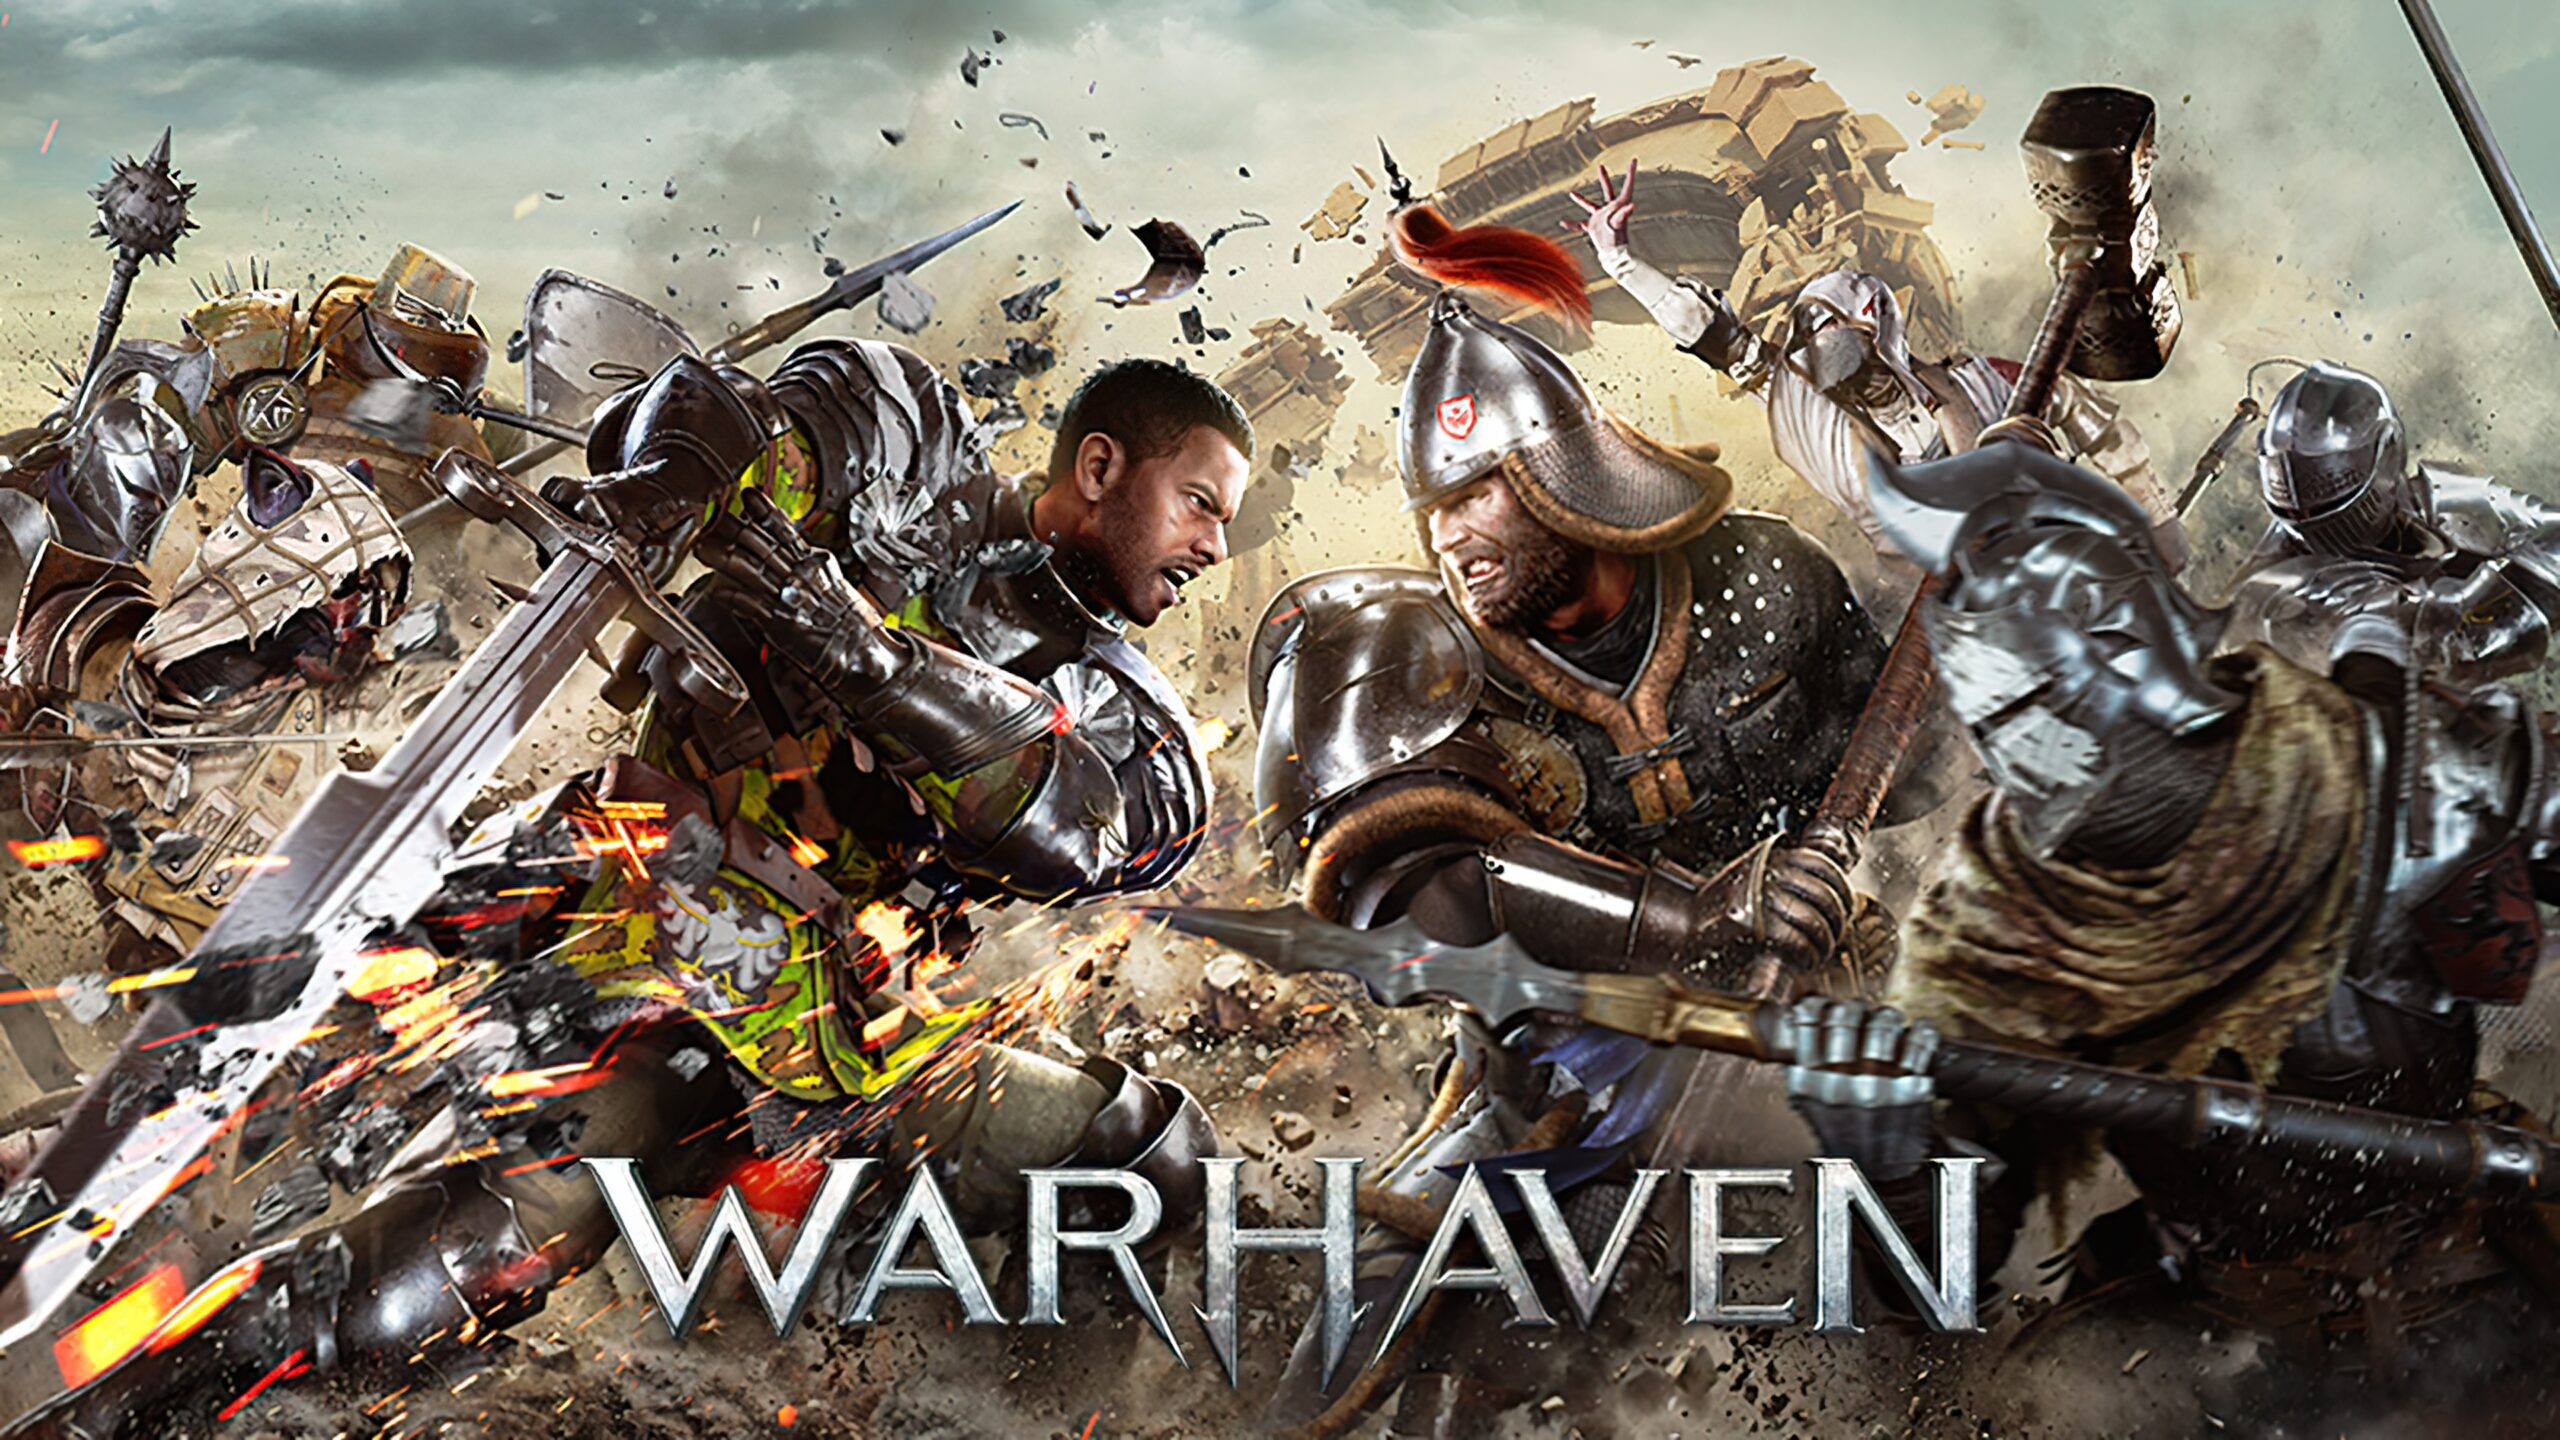 Розробники Warhaven опублікували новий трейлер гри у якому, зокрема, повідомили дату релізу у дочасному доступі - 21 вересня